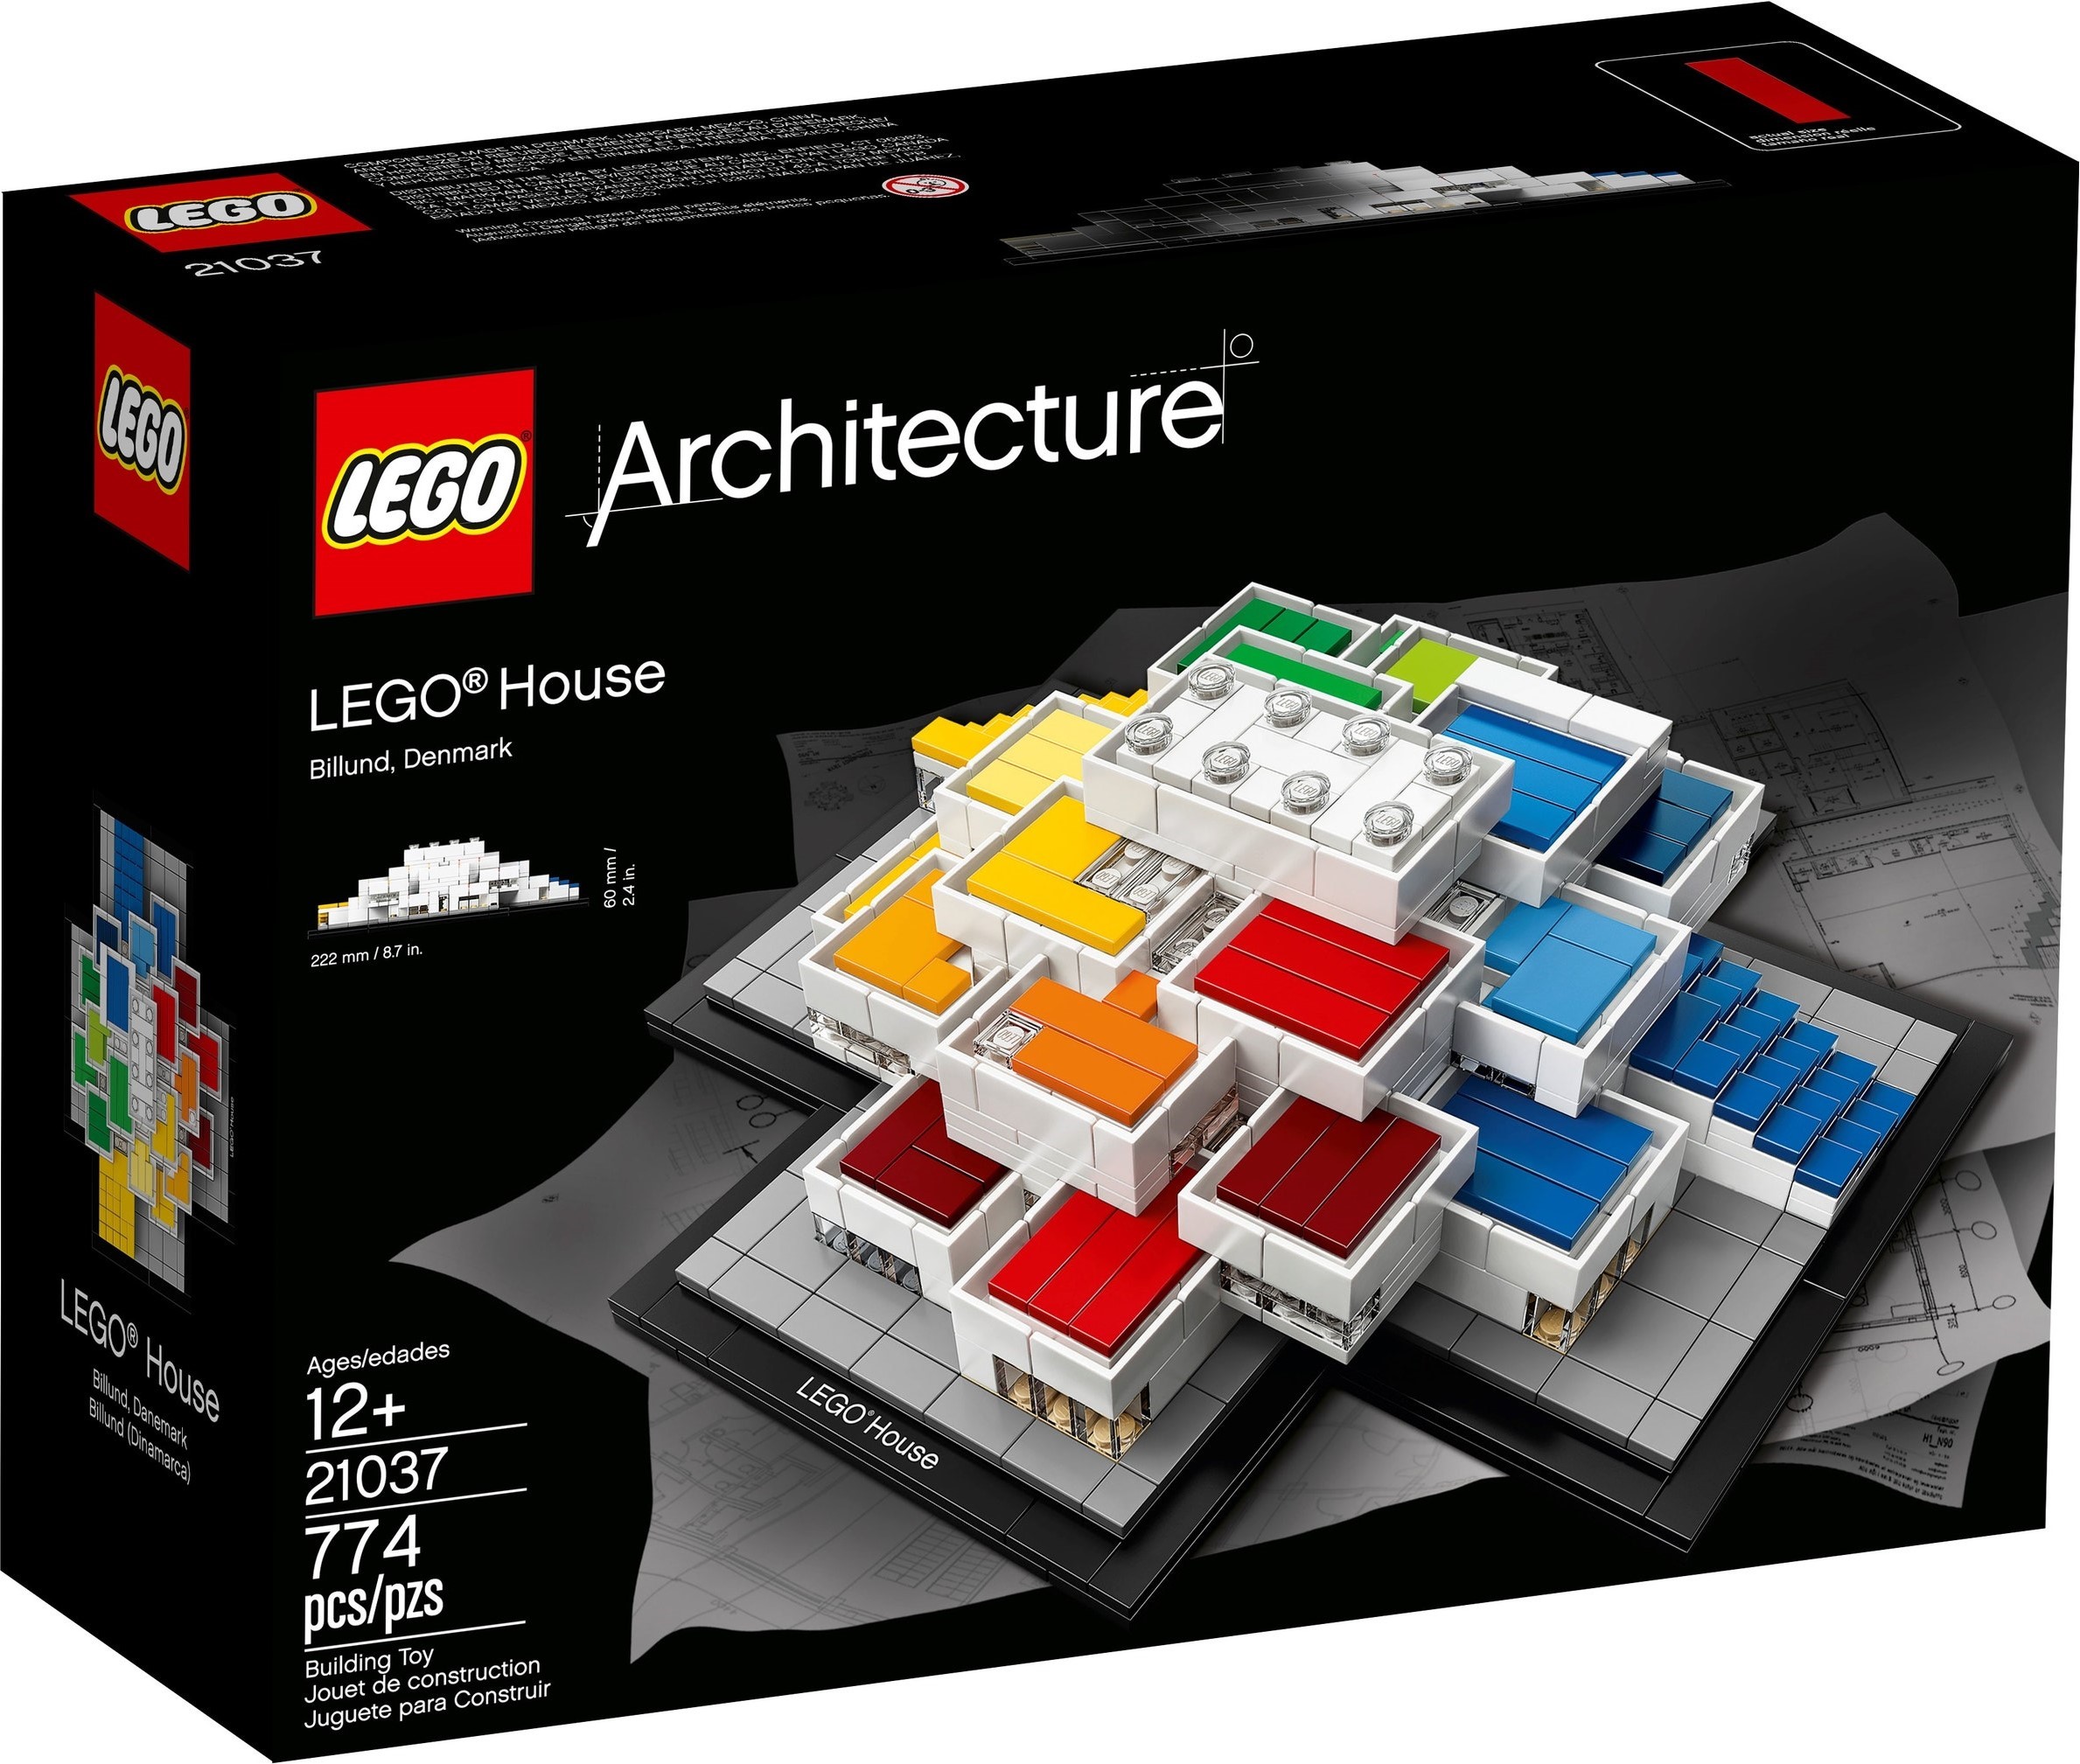 LEGO® House (21037): all